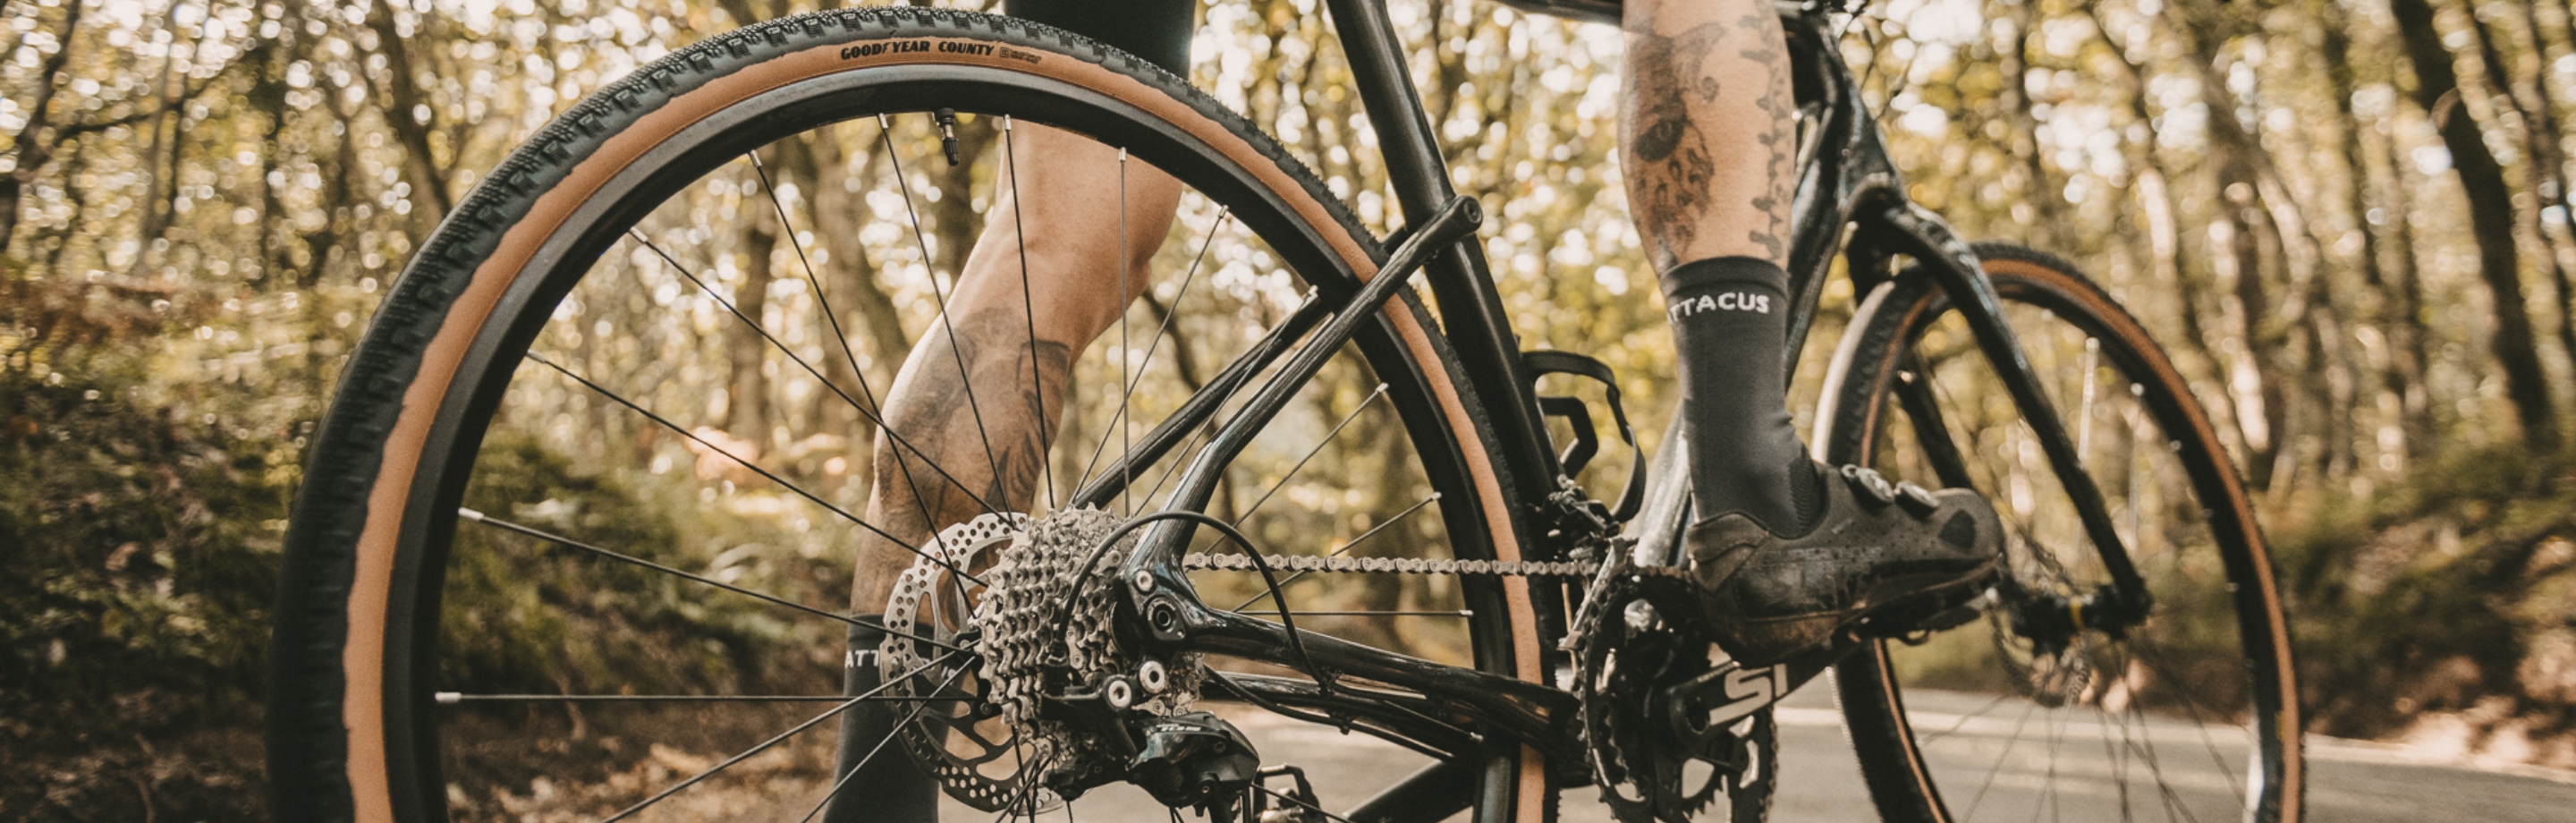 Goodyear fietsbanden - high-performance banden voor mountainbikes, racefietsen, trekkingfietsen en e-bikes